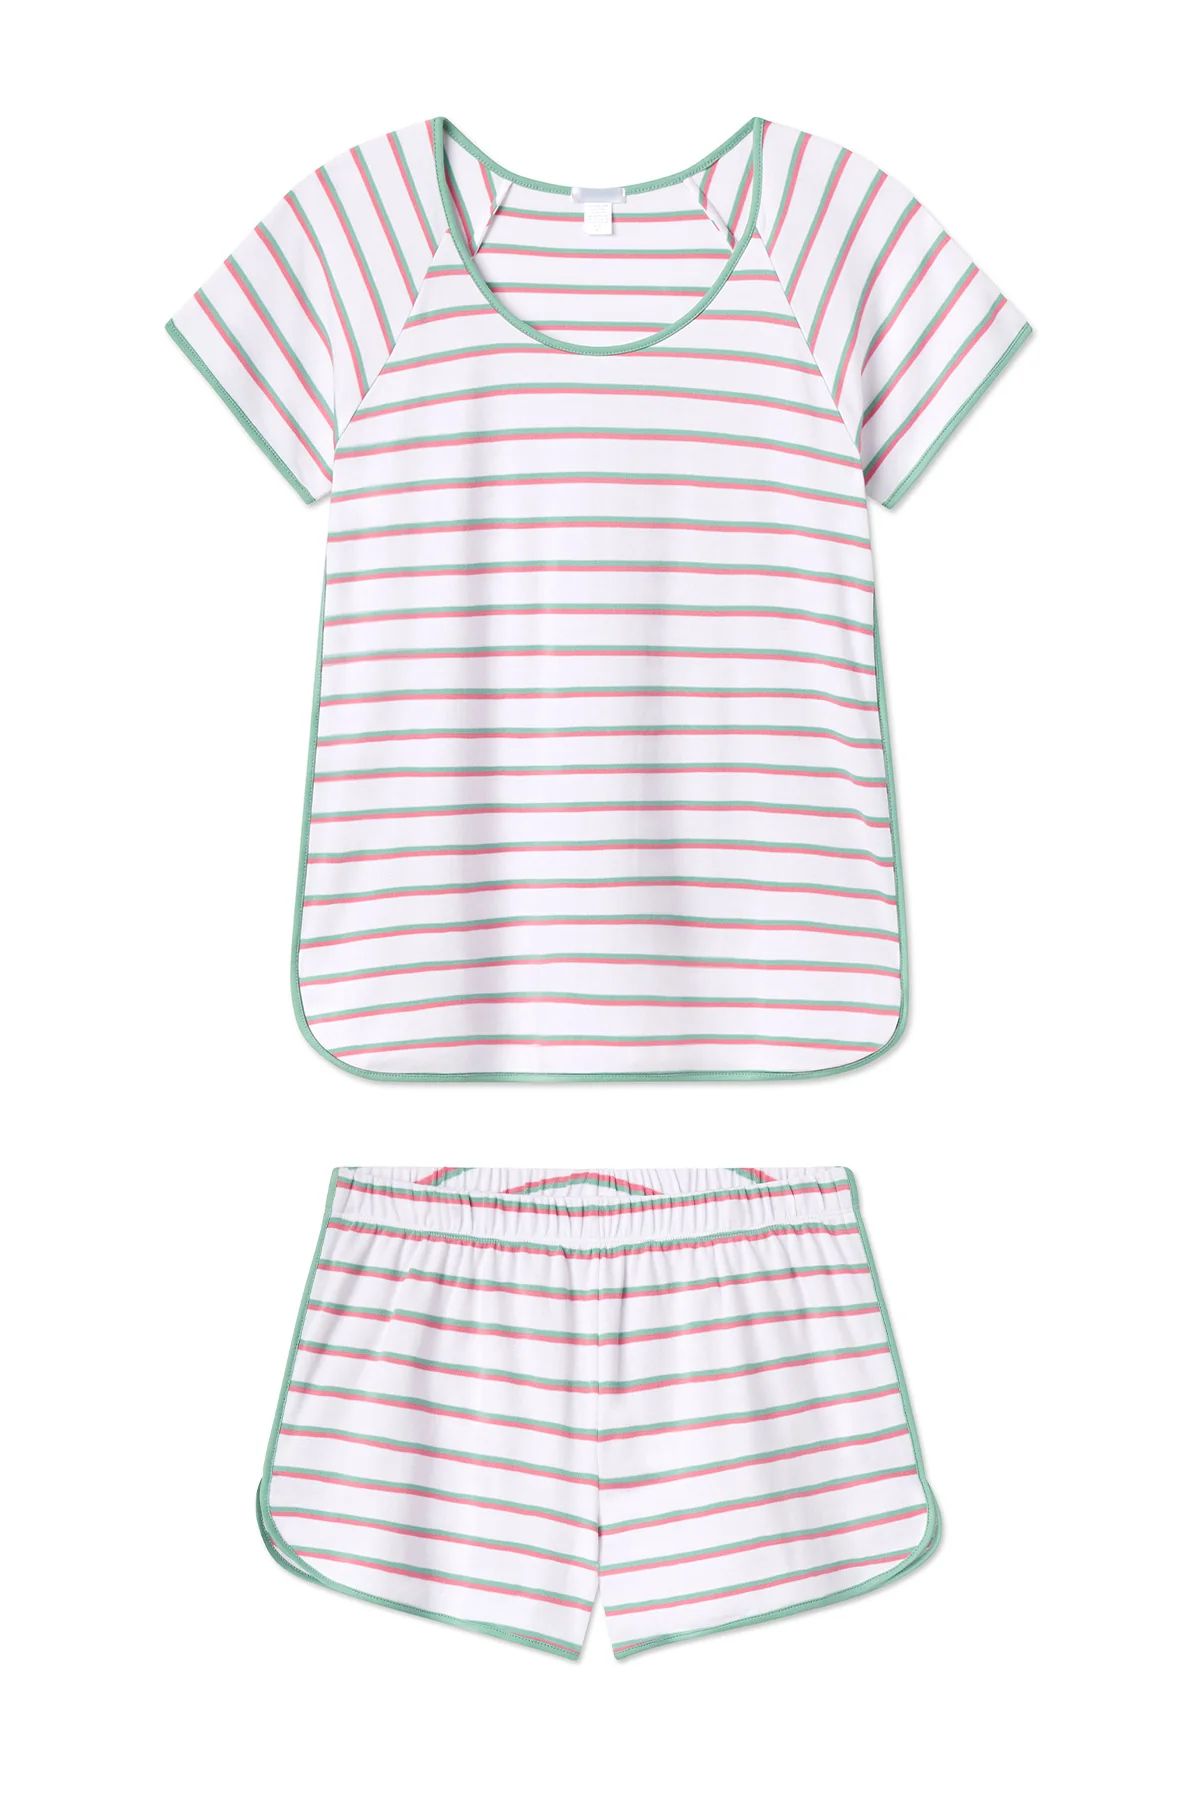 Pima Shorts Set in Petunia Stripe | Lake Pajamas